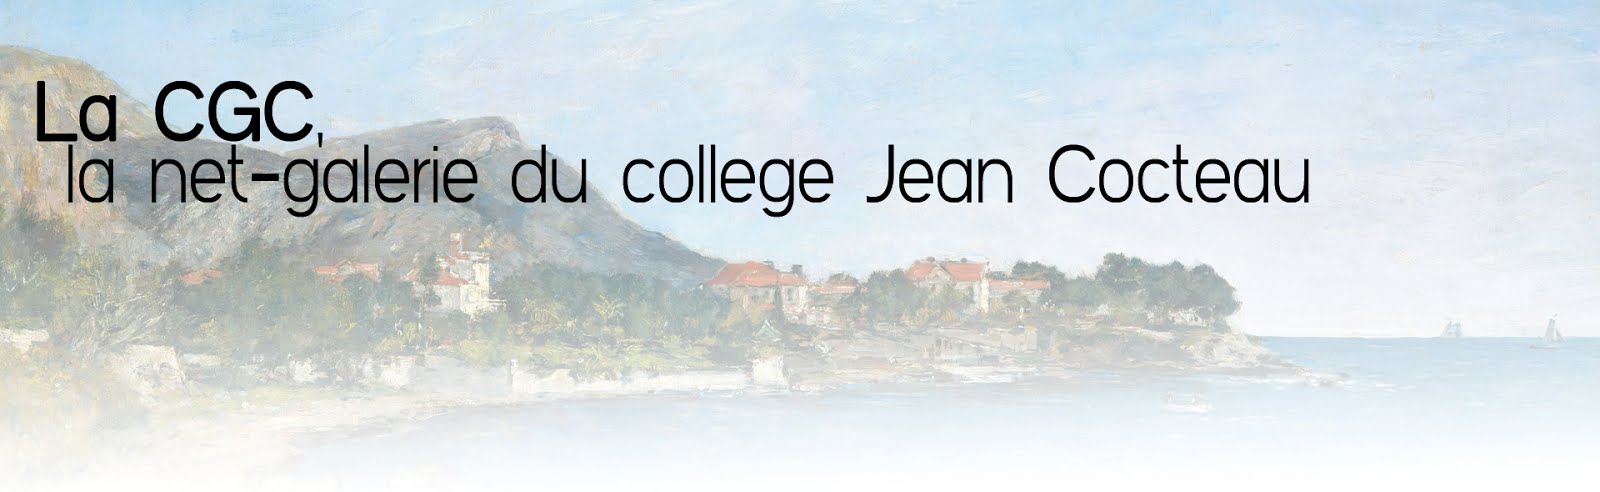 La CGC, la net-galerie artistique du collège Jean Cocteau